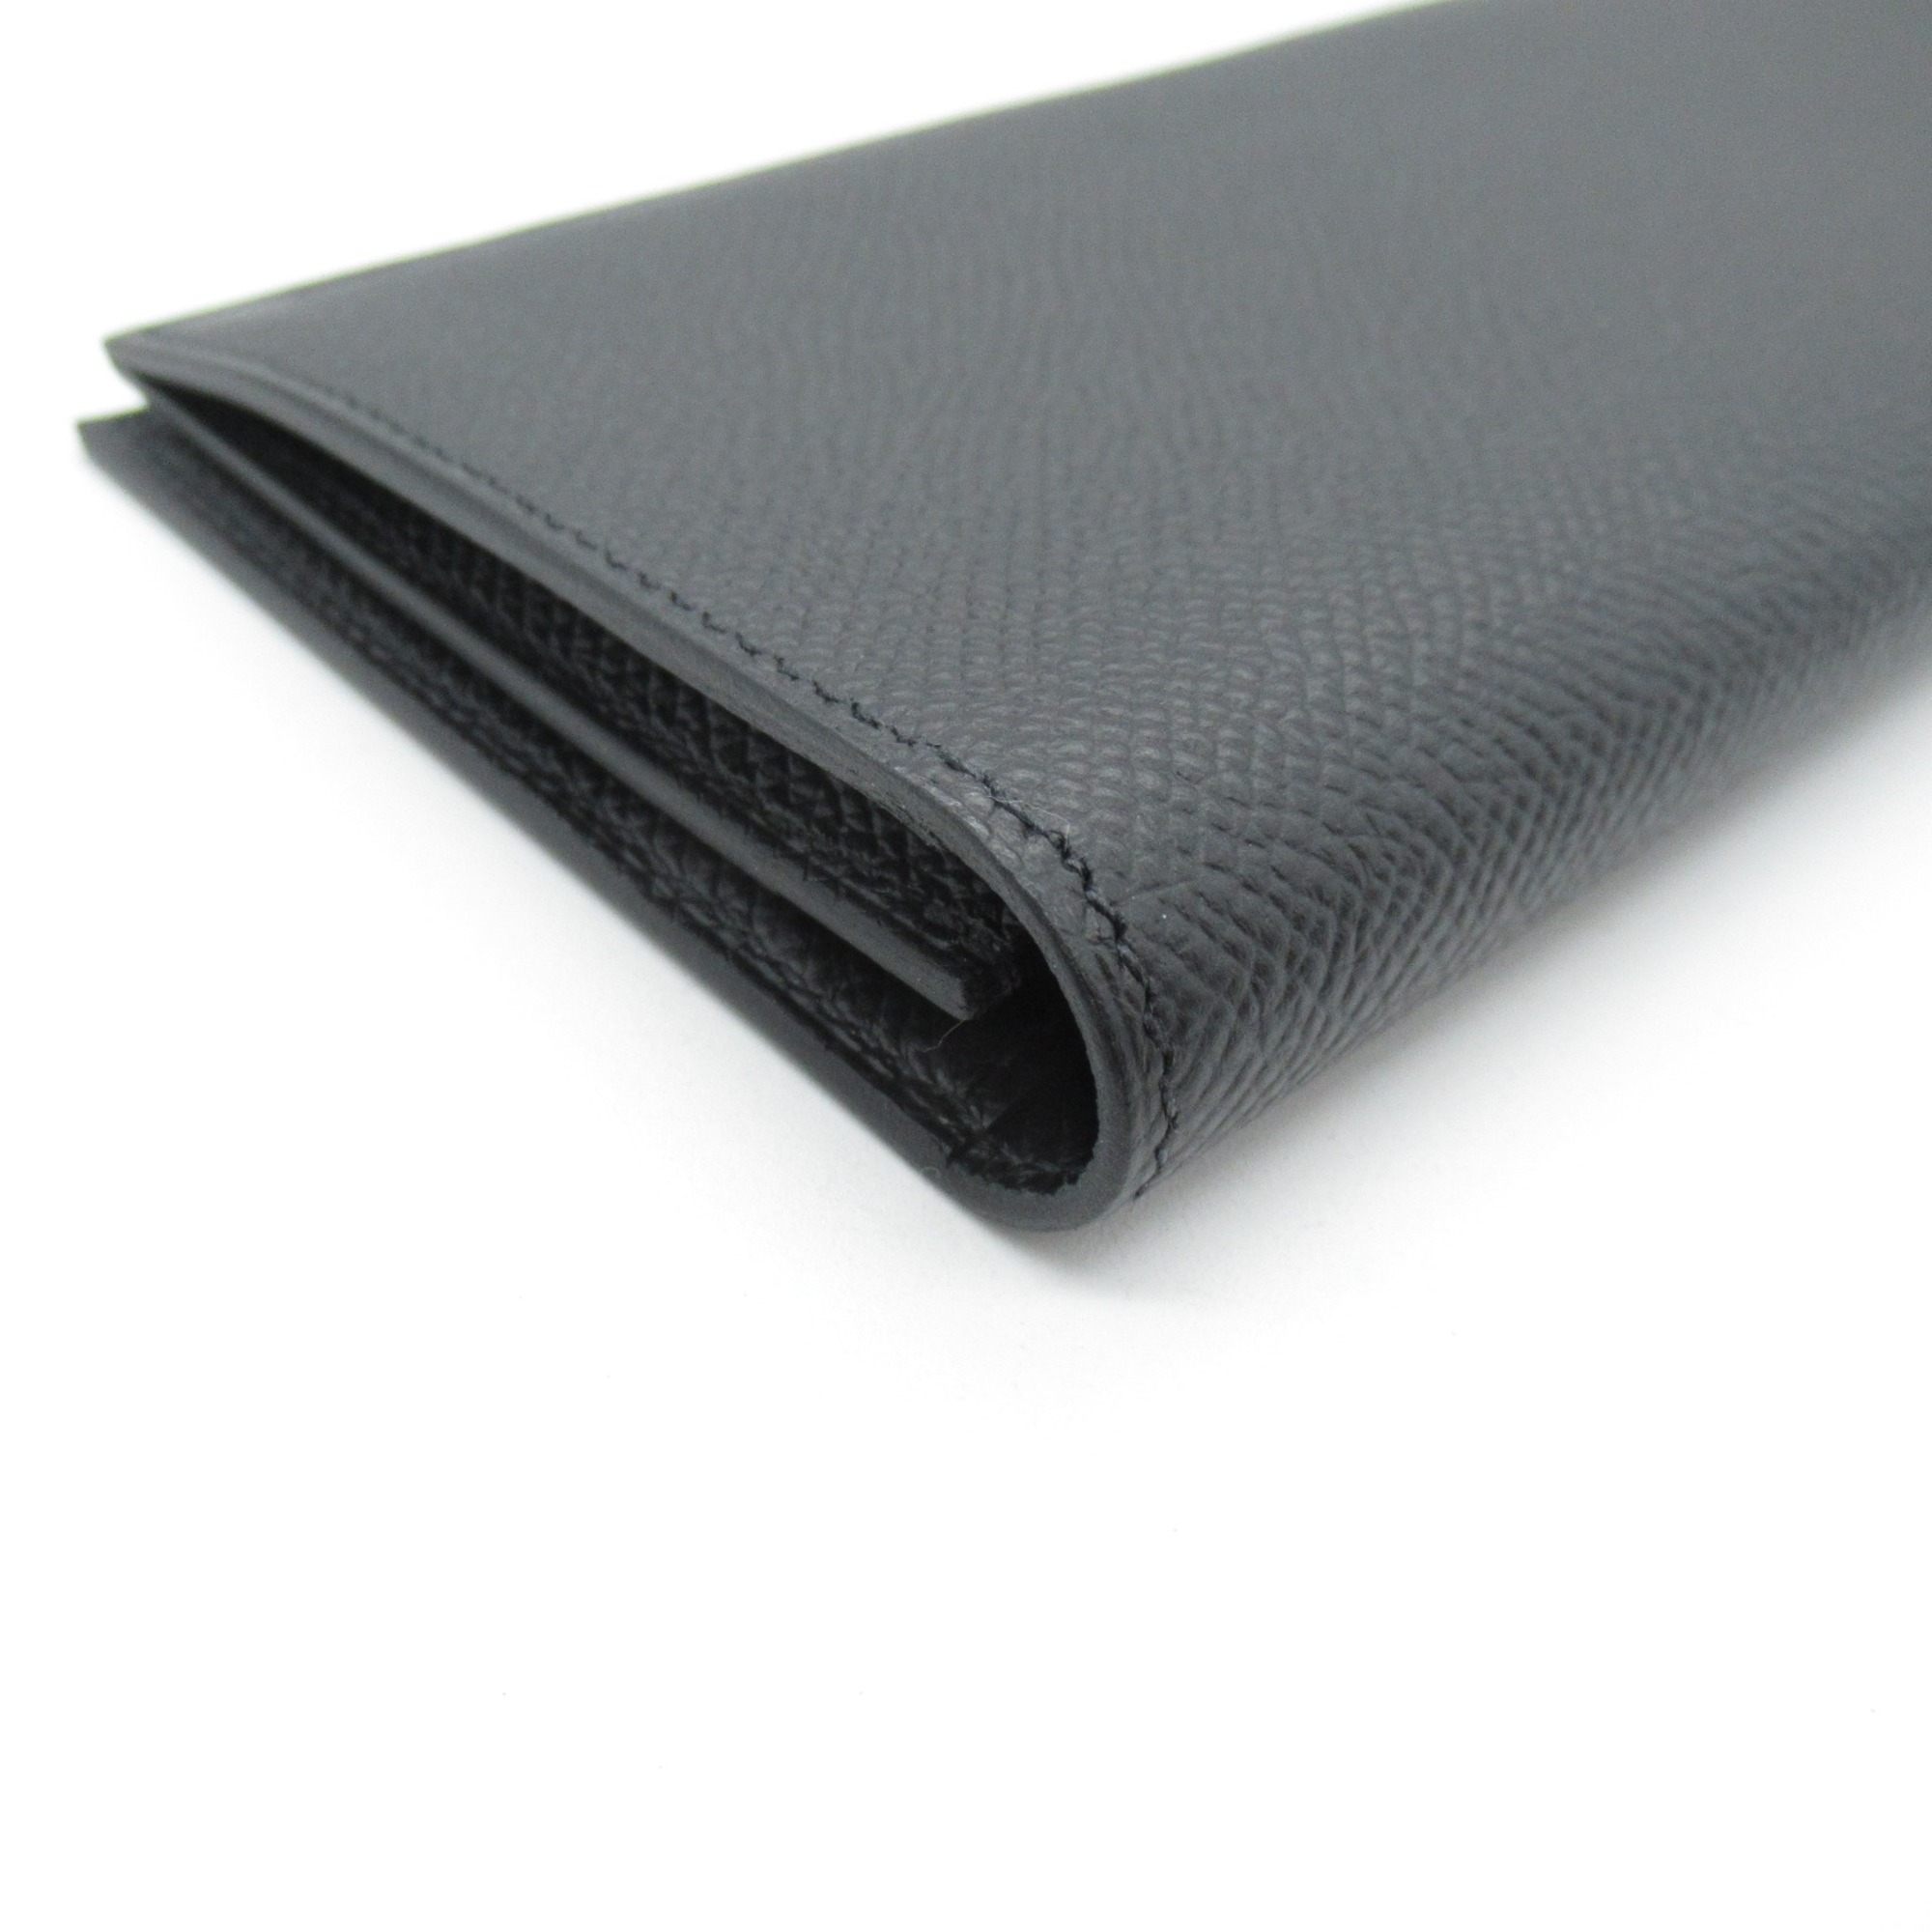 HERMES Citizen Twill Long Silk In Black Black Noir Black Epsom leather